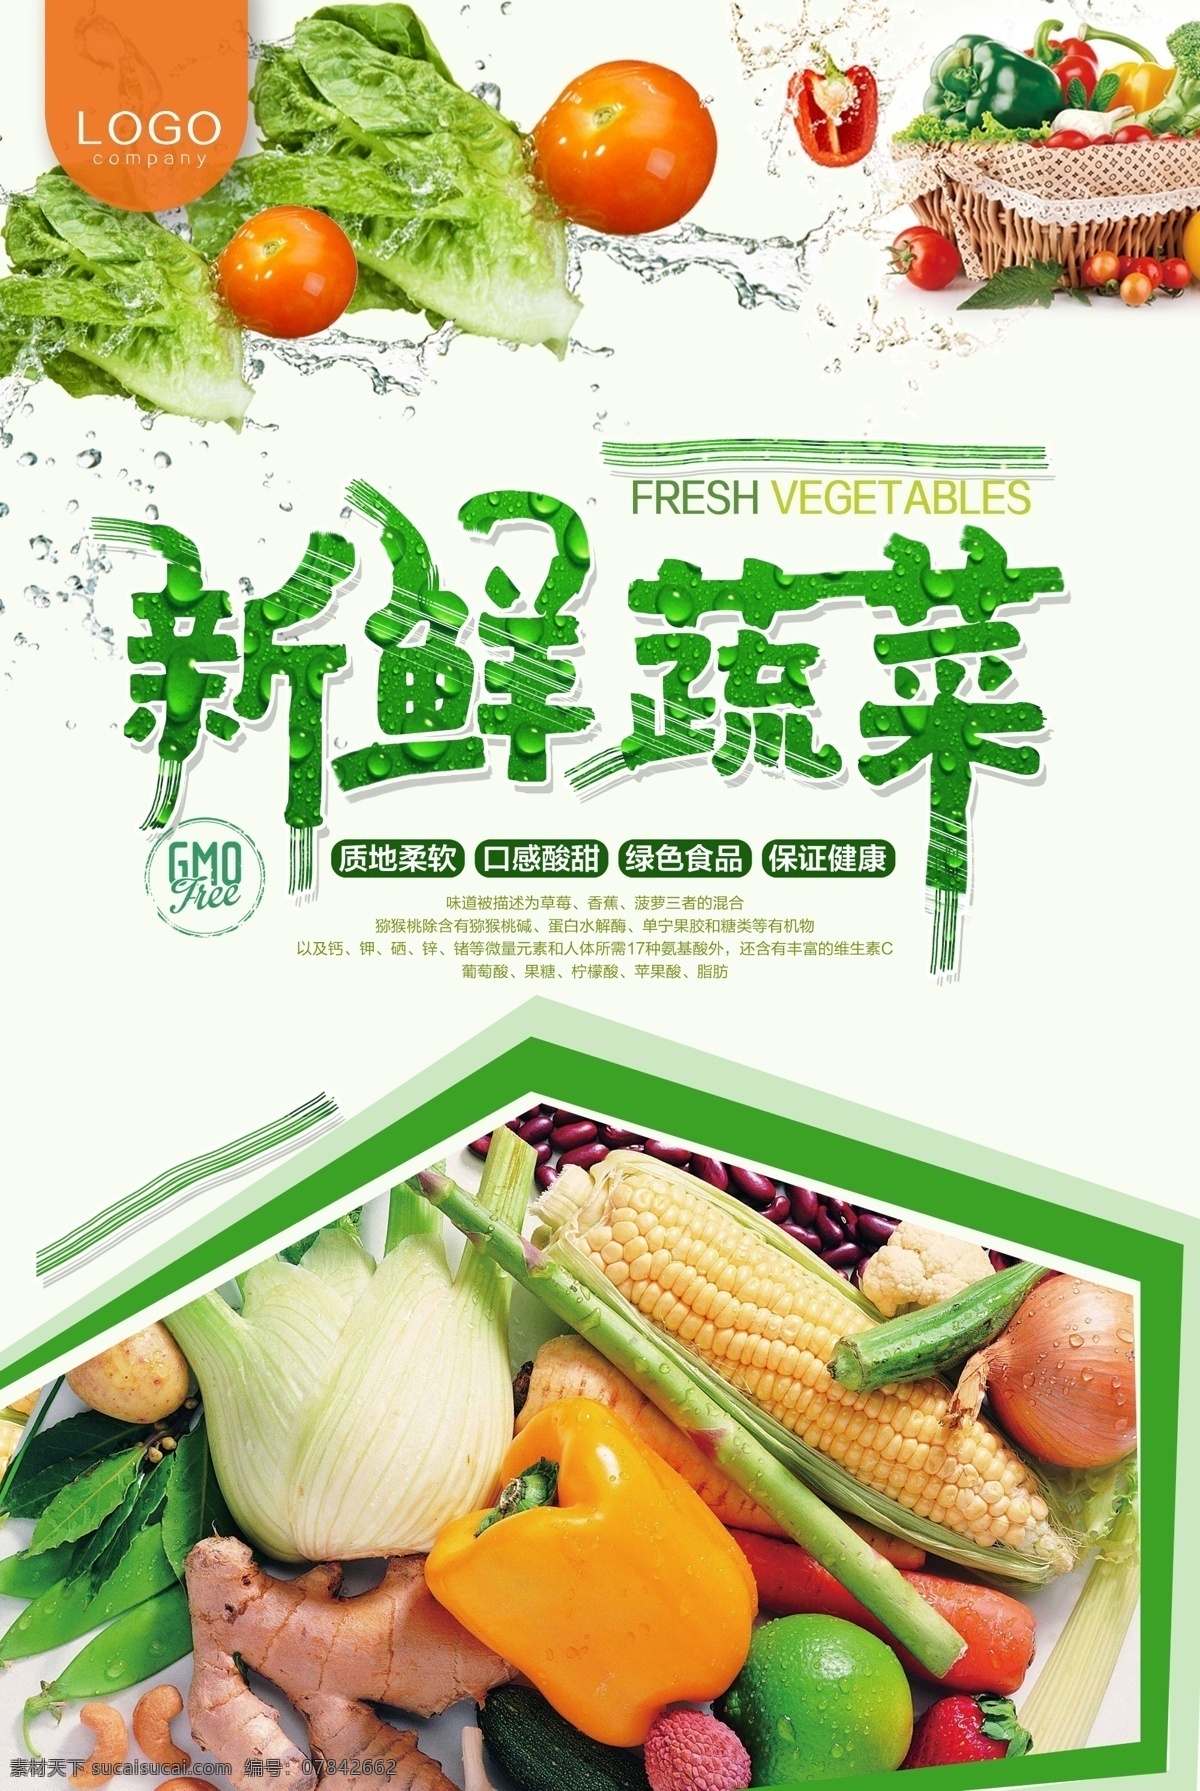 新鲜蔬菜 蔬菜 蔬菜展板 蔬菜海报 蔬菜文化 蔬菜素材 蔬菜挂画 蔬菜饮食 蔬菜营养 蔬菜超市 蔬菜市场 蔬菜广告 绿色蔬菜 蔬菜模板 蔬菜图片